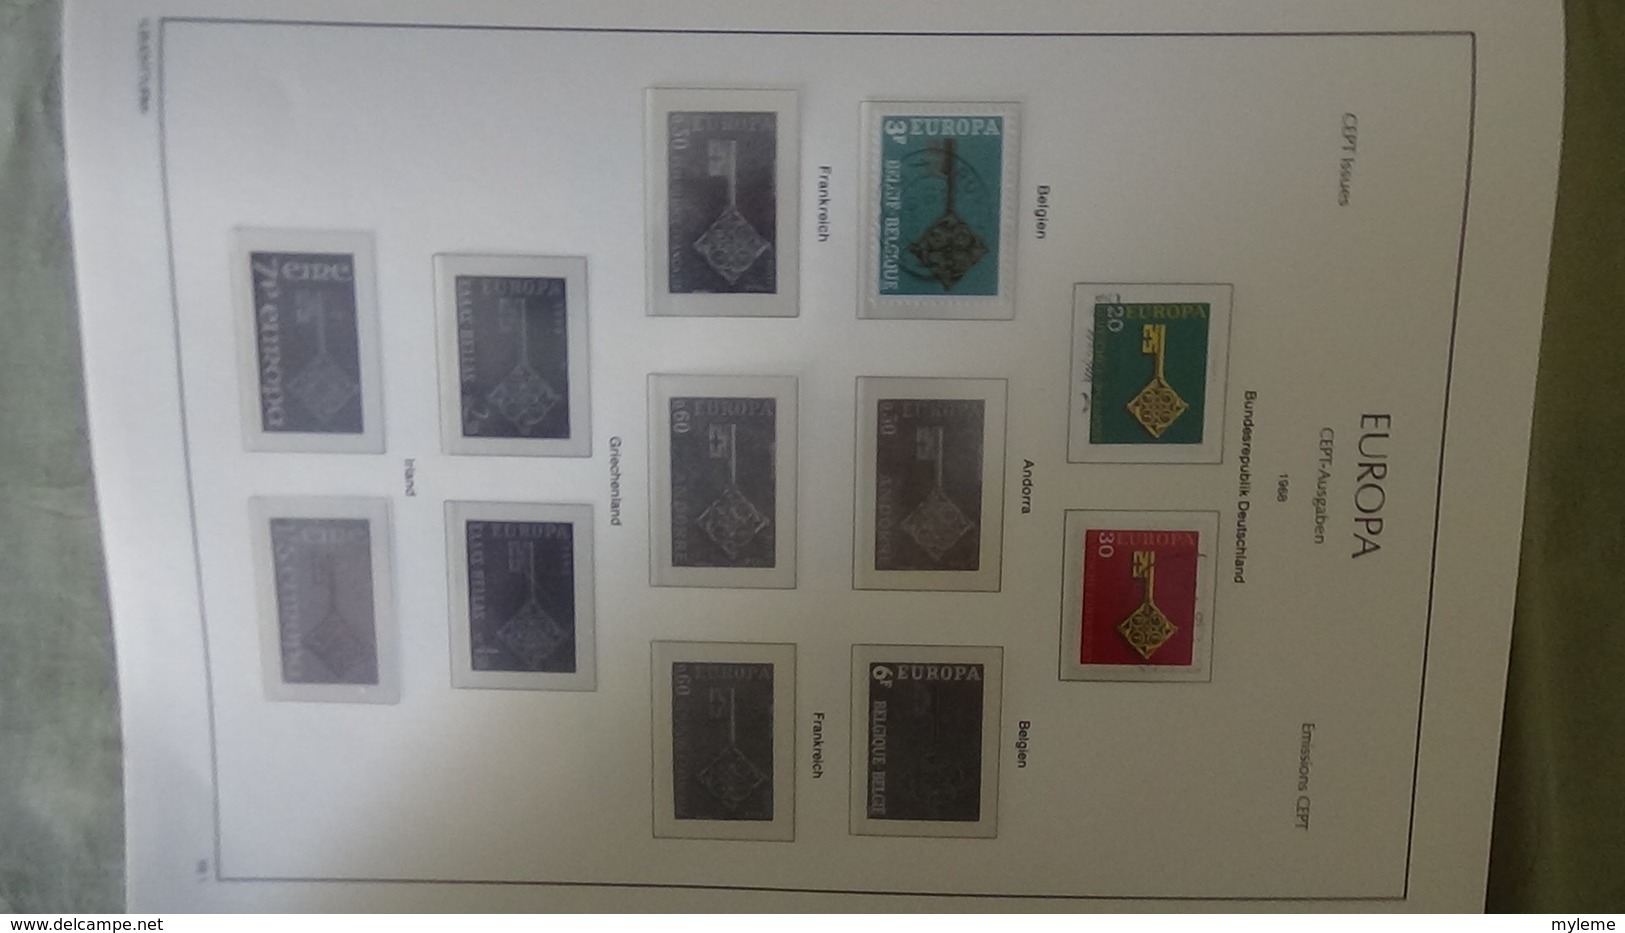 Collection Europa oblitéré peu de timbres mais album LEUCHTTURM) Port offert dès 50 euros d'achat !!!